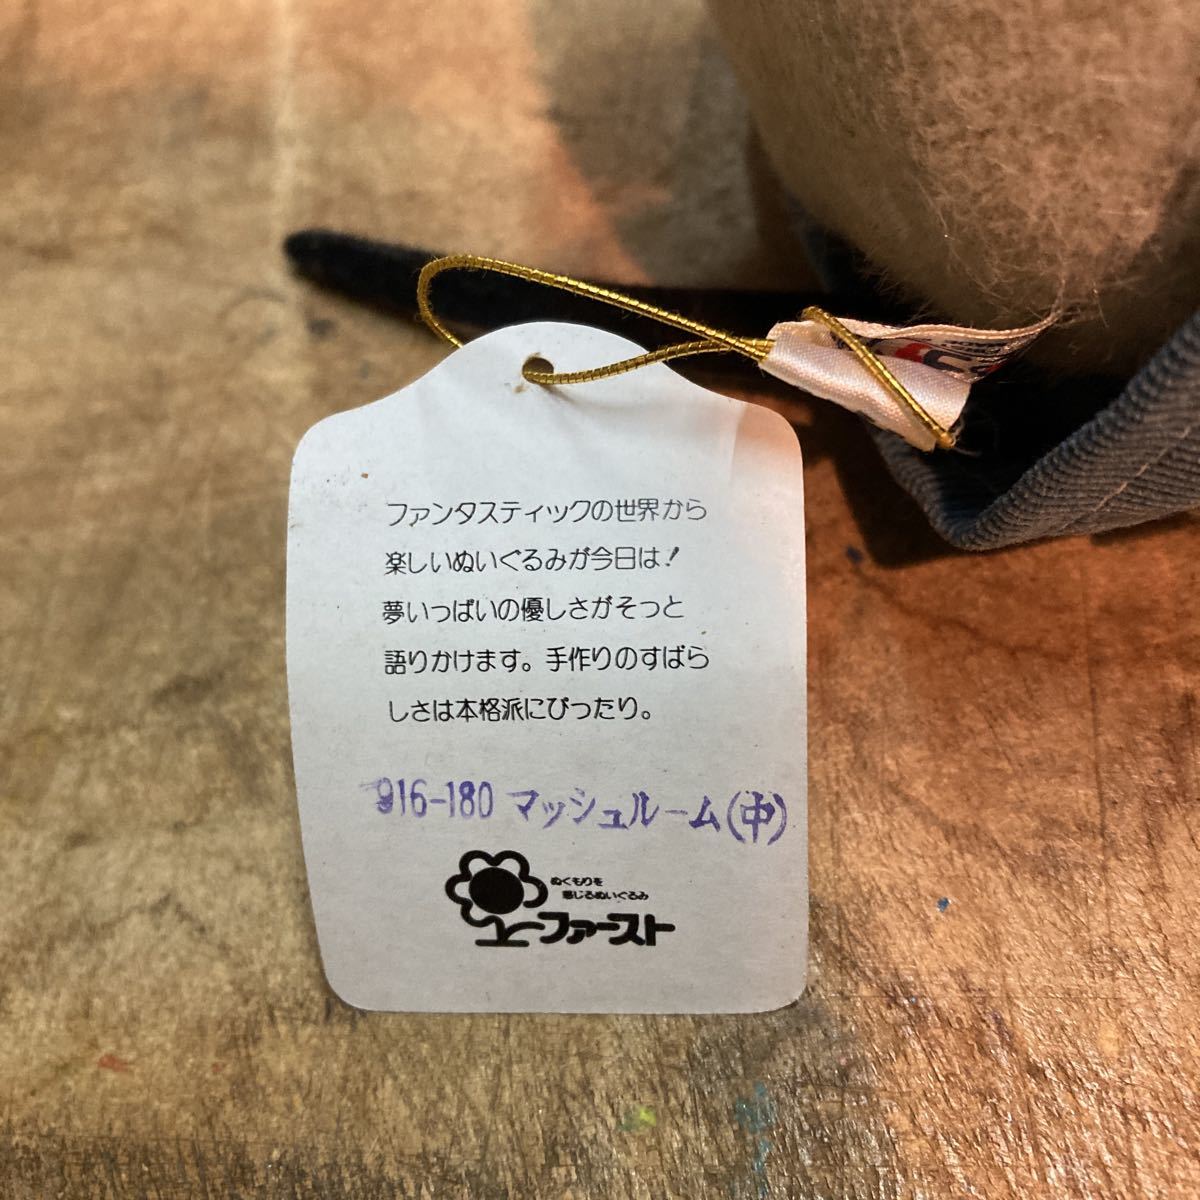  редкий прекрасный товар First фирма мышь мягкая игрушка сделано в Японии Vintage Sylvanian Families способ с биркой кукла . качество прозрачный чехол имеется коллекция 